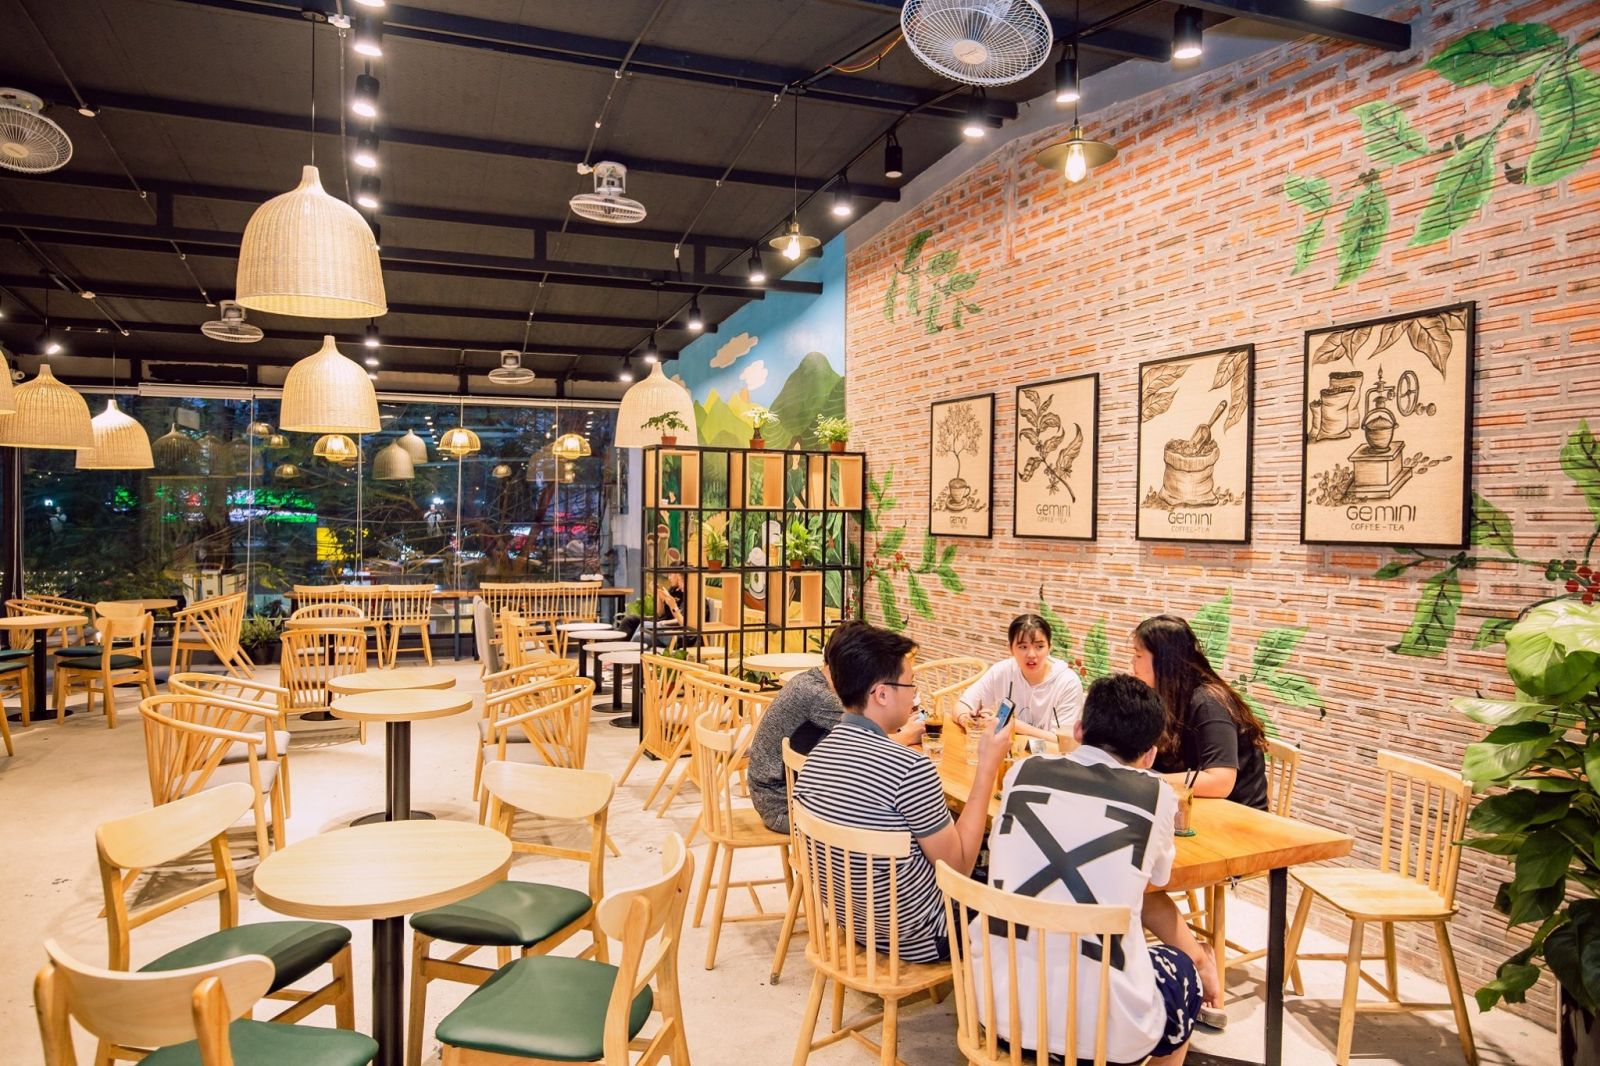 Quán cafe đường Hồ Tùng Mậu là một địa điểm phổ biến để trò chuyện và thưởng thức cà phê thông qua sự kiện nghệ thuật và âm nhạc trở lại. Tại đây, bạn có thể đắm mình trong không gian thoải mái và thư giãn, cùng thưởng thức những ly cà phê thơm ngon nhất.